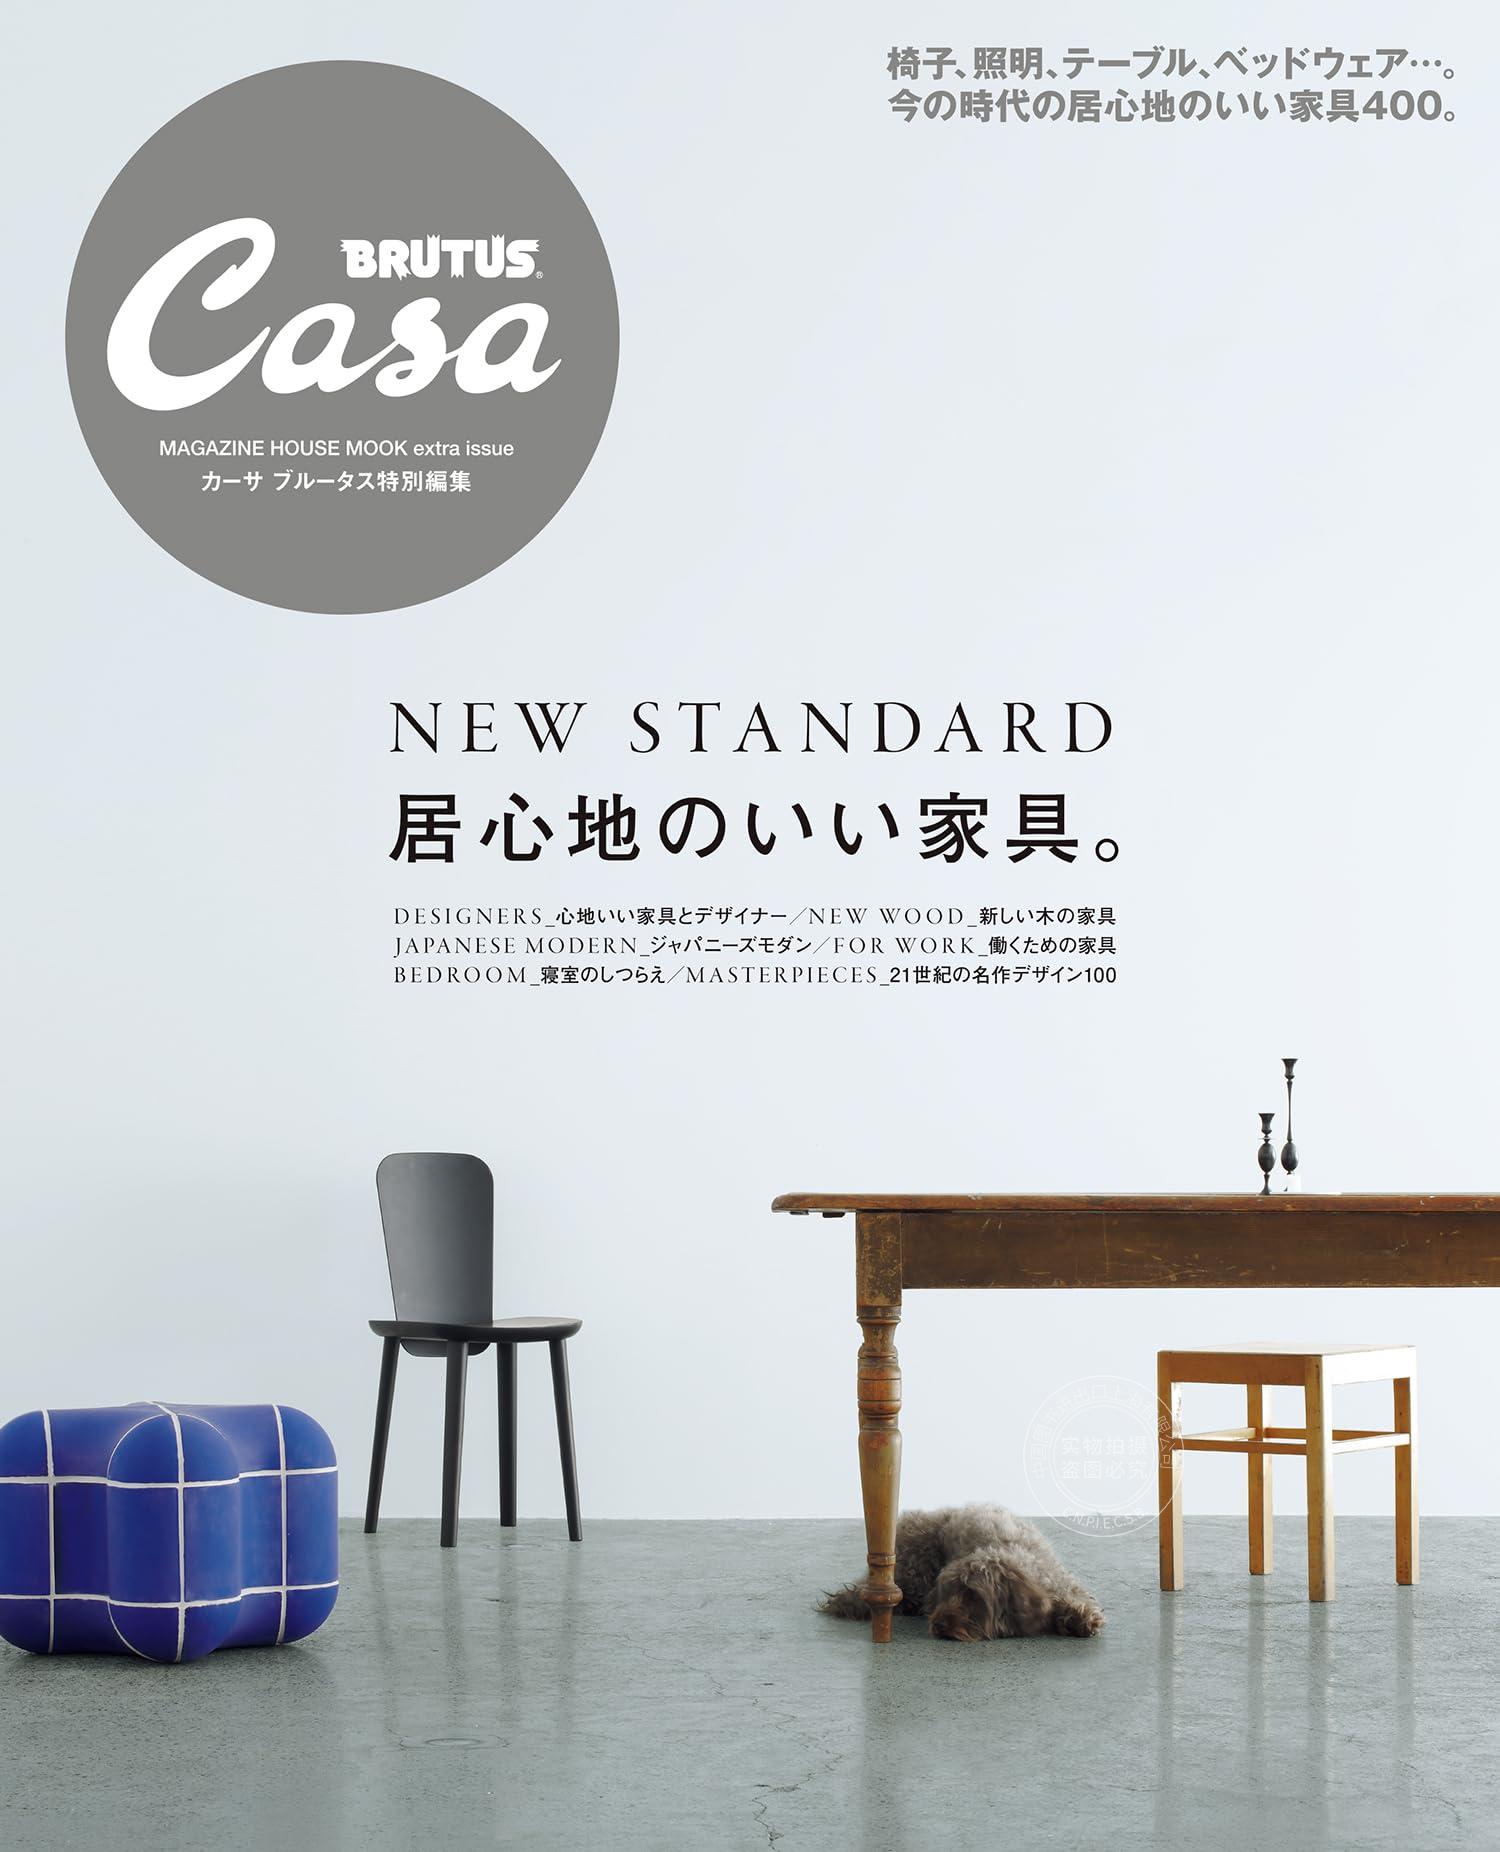 进口日文 Casa BRUTUS特別編集舒适的家具居心地のいい家具